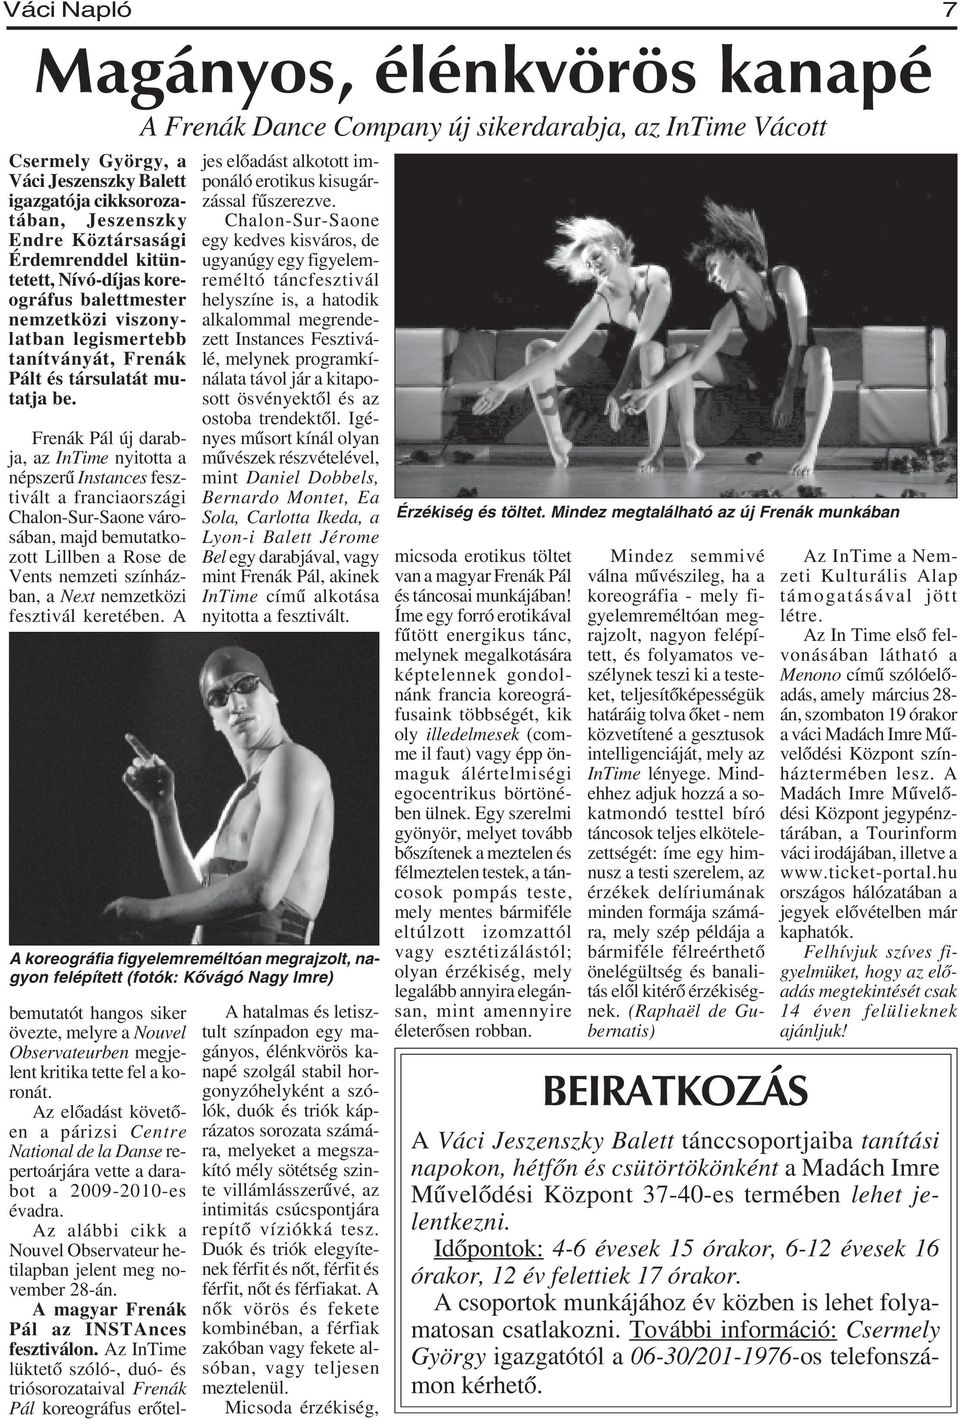 Frenák Pál új darabja, az InTime nyitotta a népszerû Instances fesztivált a franciaországi Chalon-Sur-Saone városában, majd bemutatkozott Lillben a Rose de Vents nemzeti színházban, a Next nemzetközi